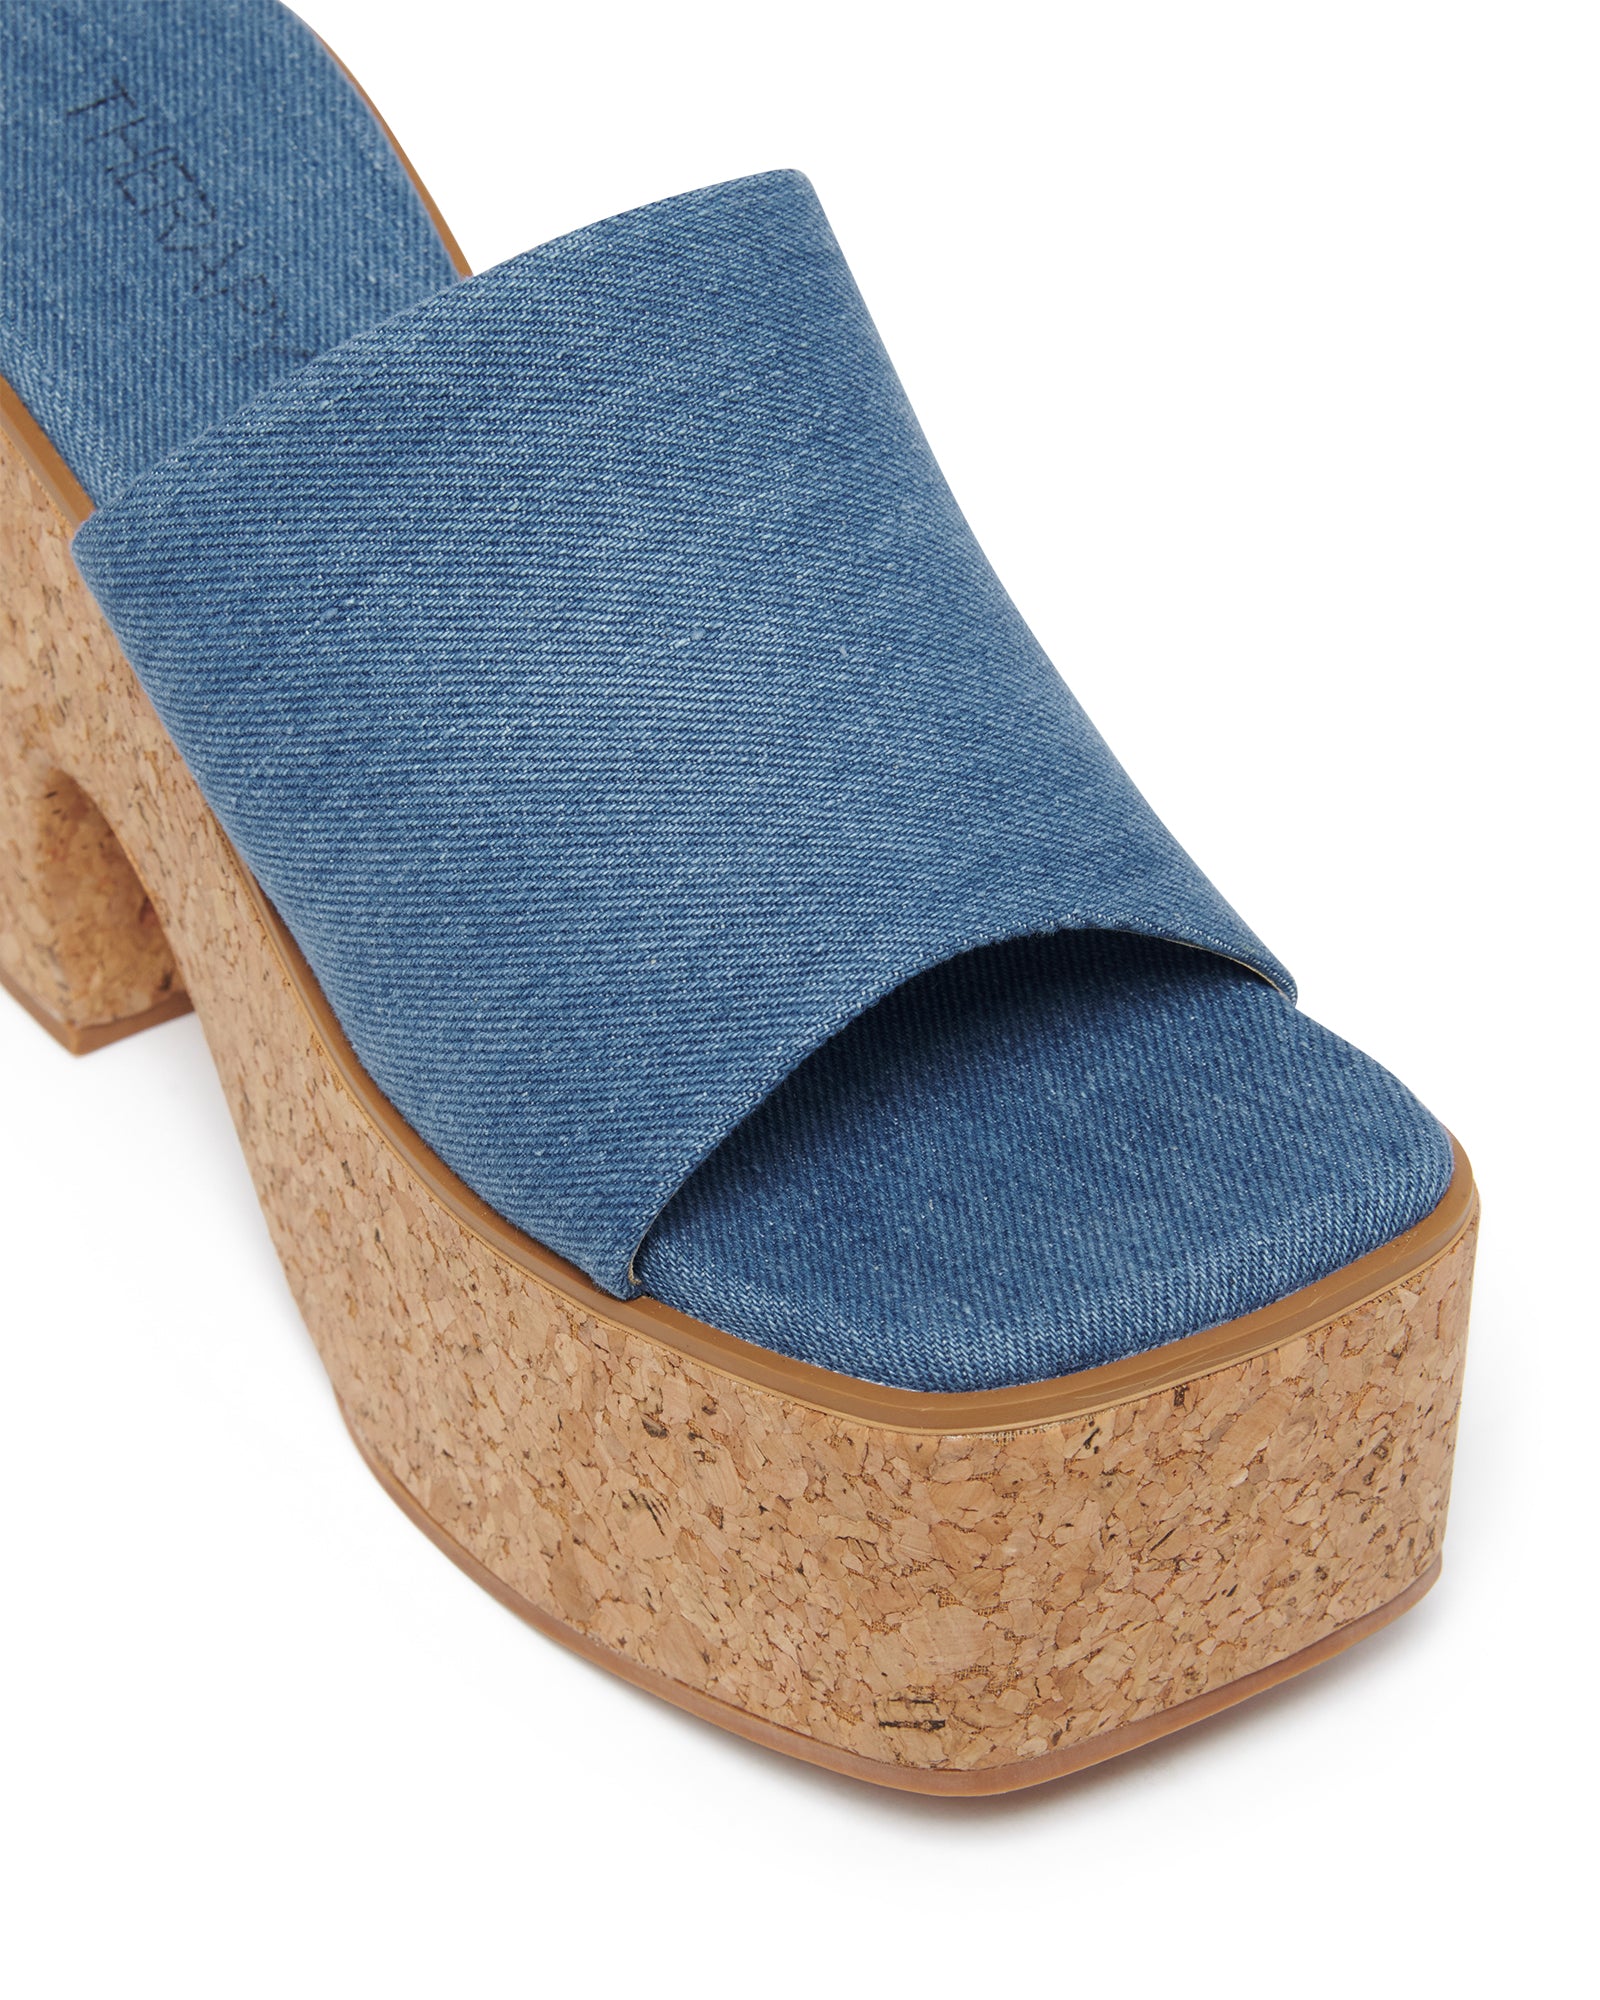 Therapy Shoes Dreamy Blue Denim | Women's Heels | Sandals | Platform | Mule